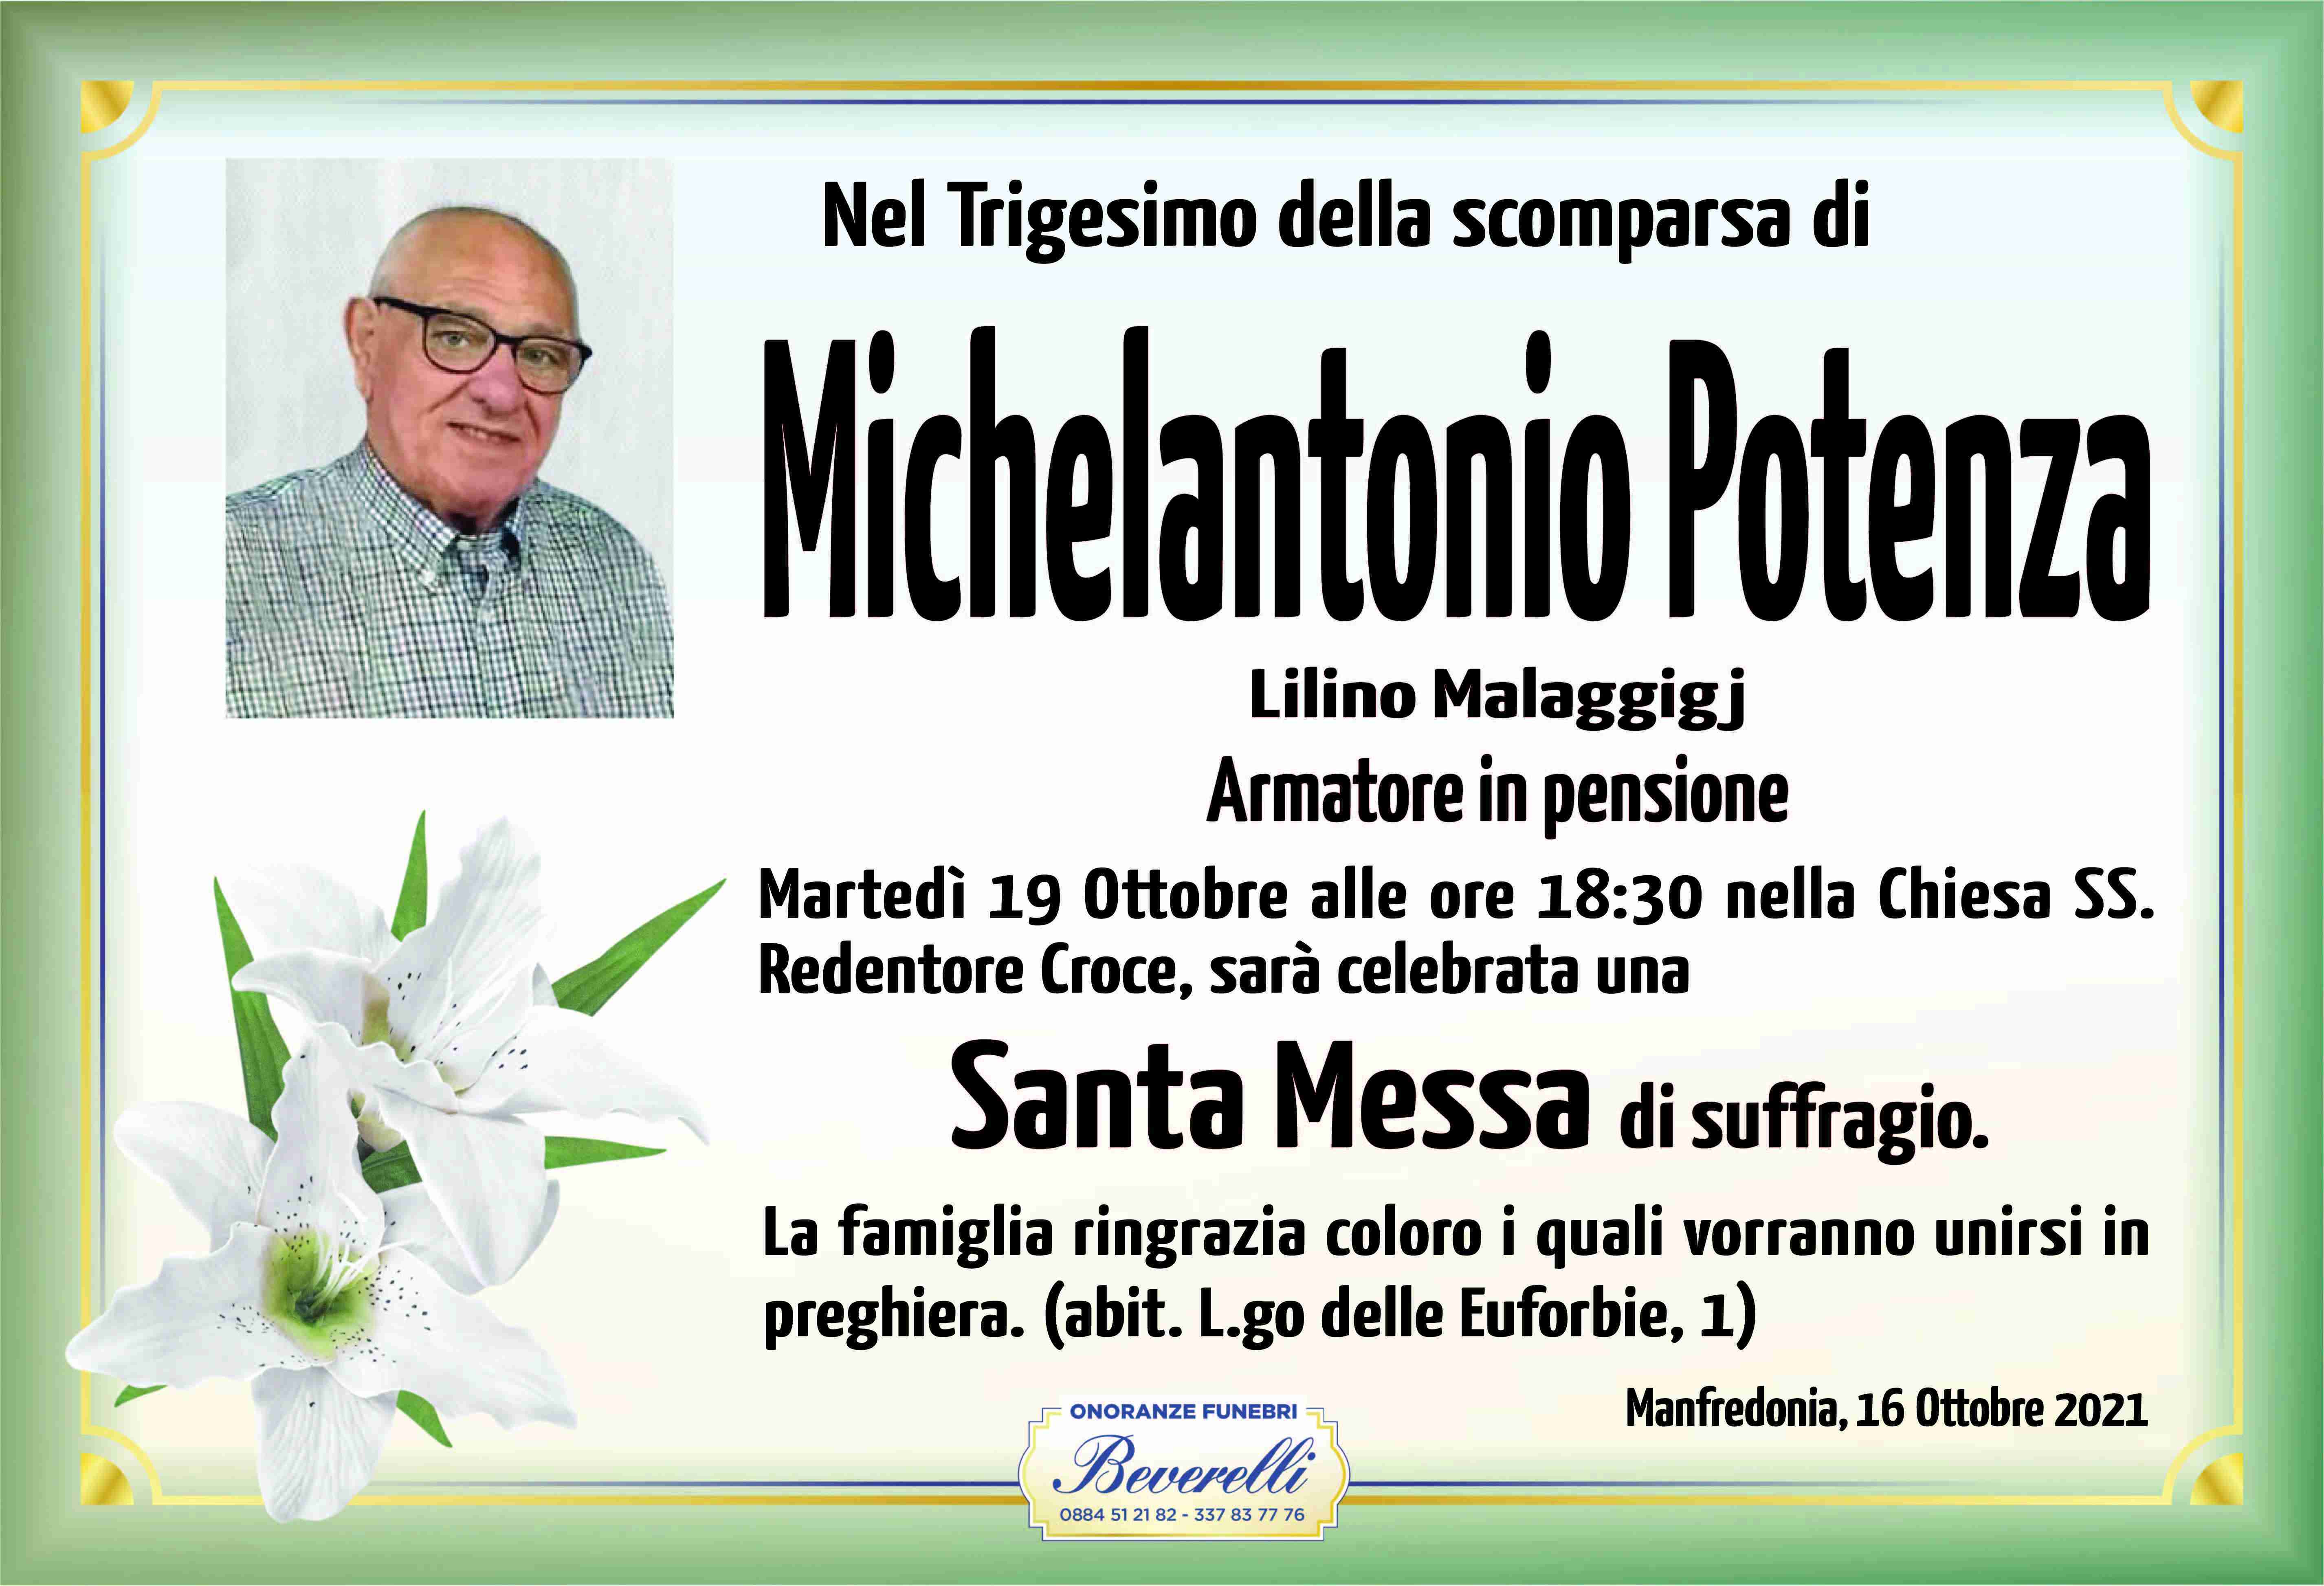 Michelantonio Potenza